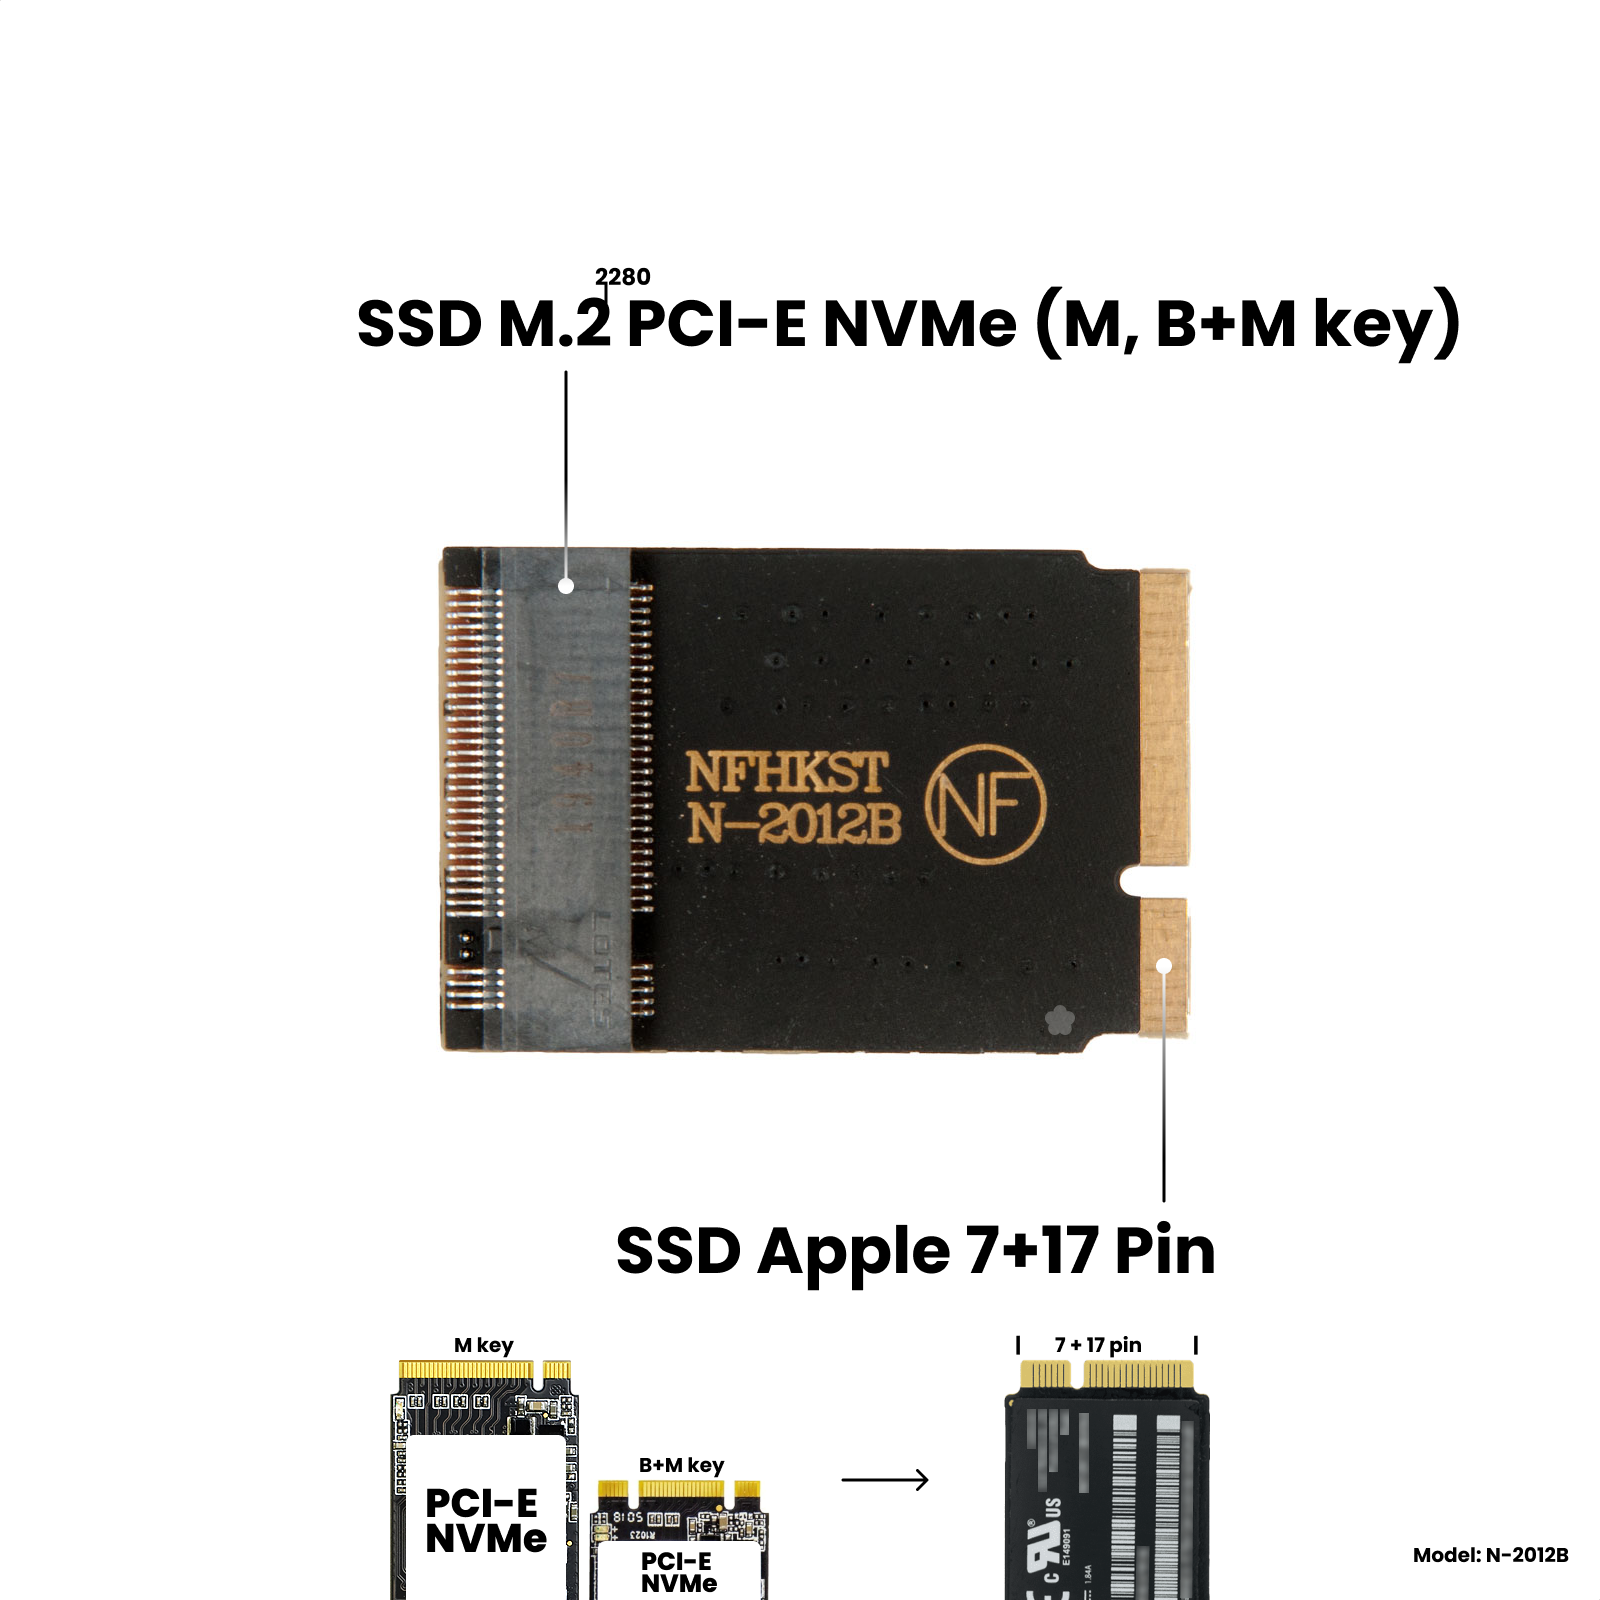 Адаптер-переходник для установки диска SSD M.2 NVMe (M key) в разъем Apple SSD (7+17 Pin) на MacBook Air 11", 13" Mid 2012 / NFHK N-2012B